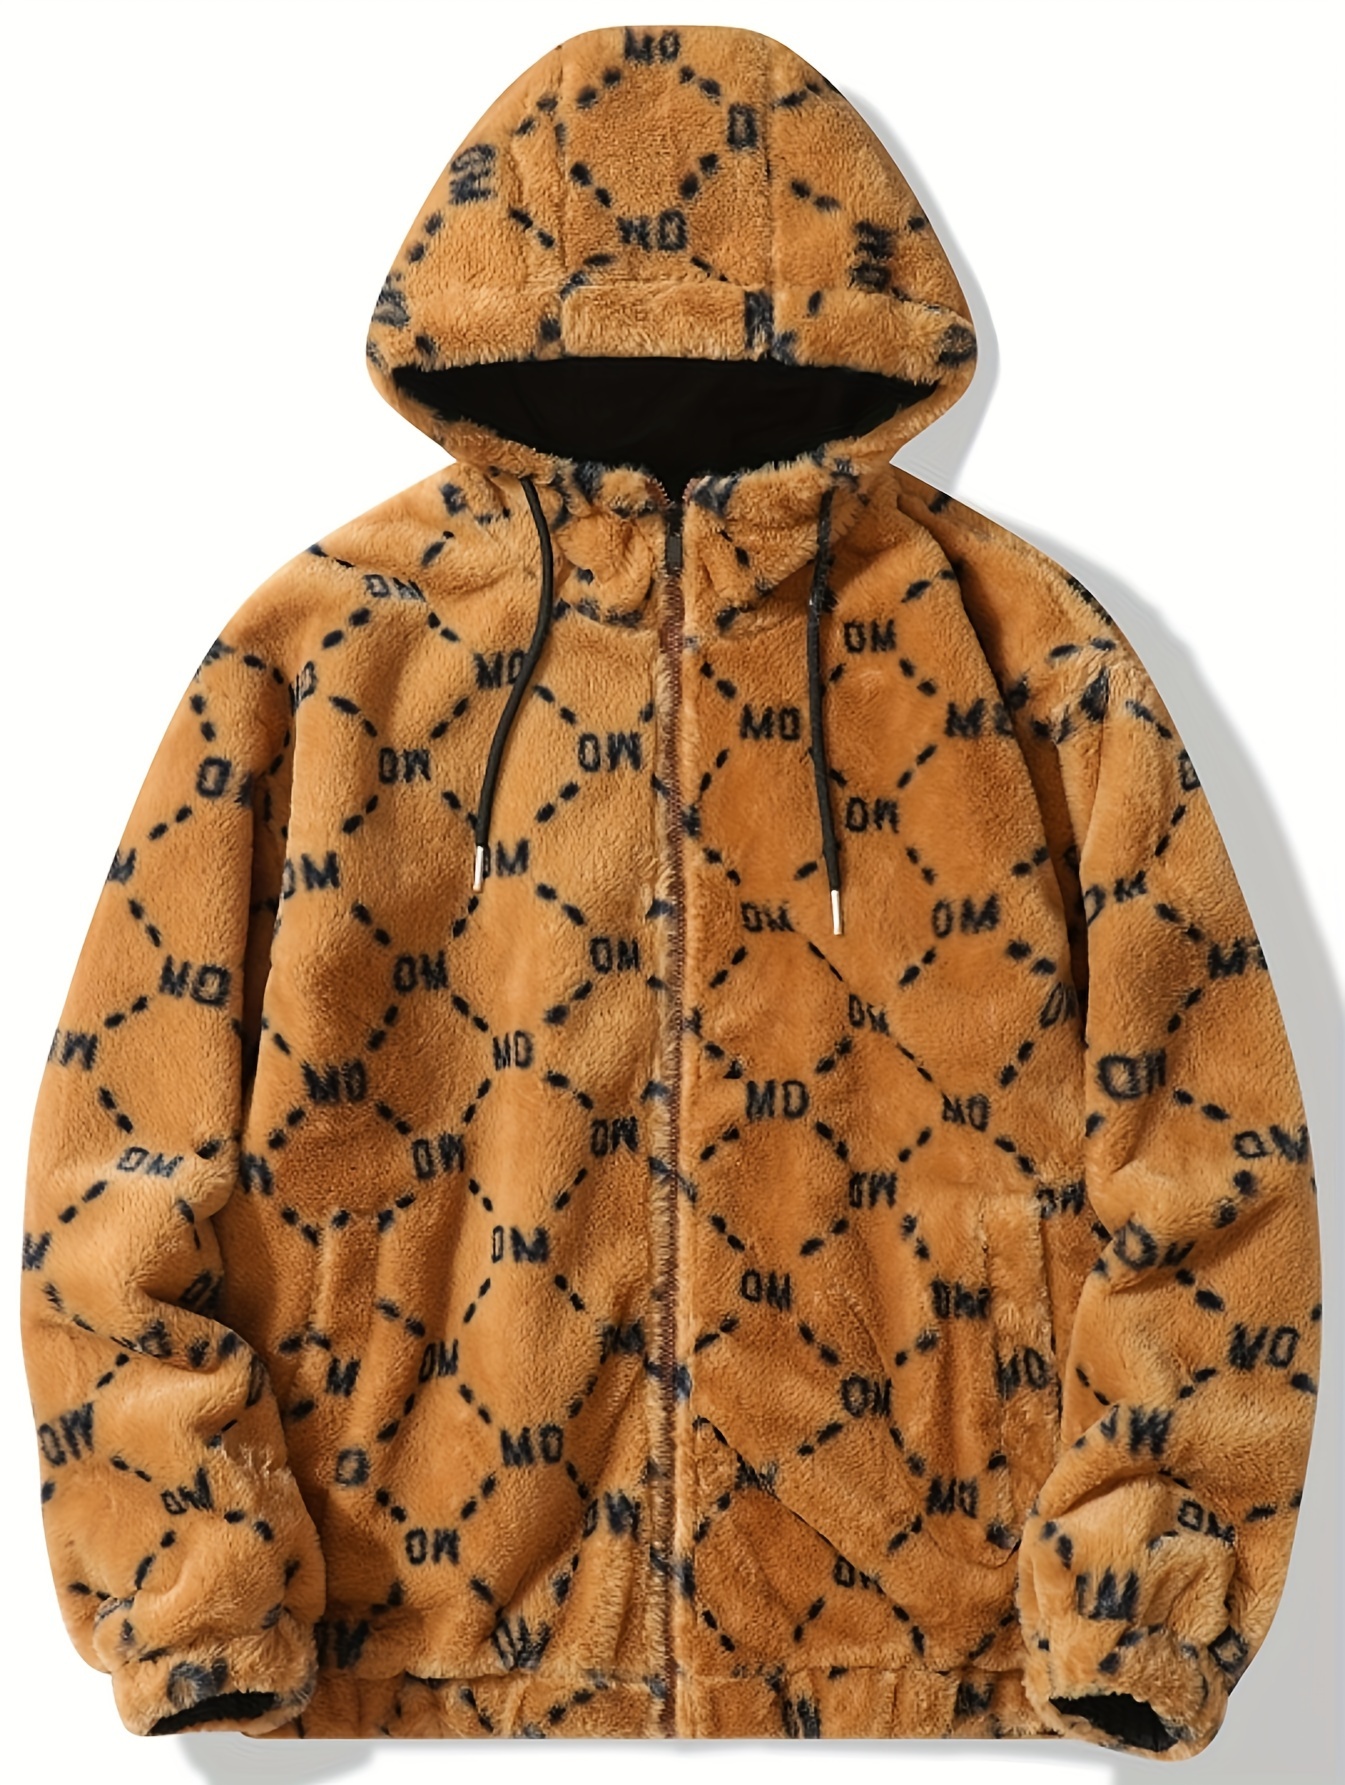 Las mejores ofertas en Abrigos Louis Vuitton Brown, chaquetas y